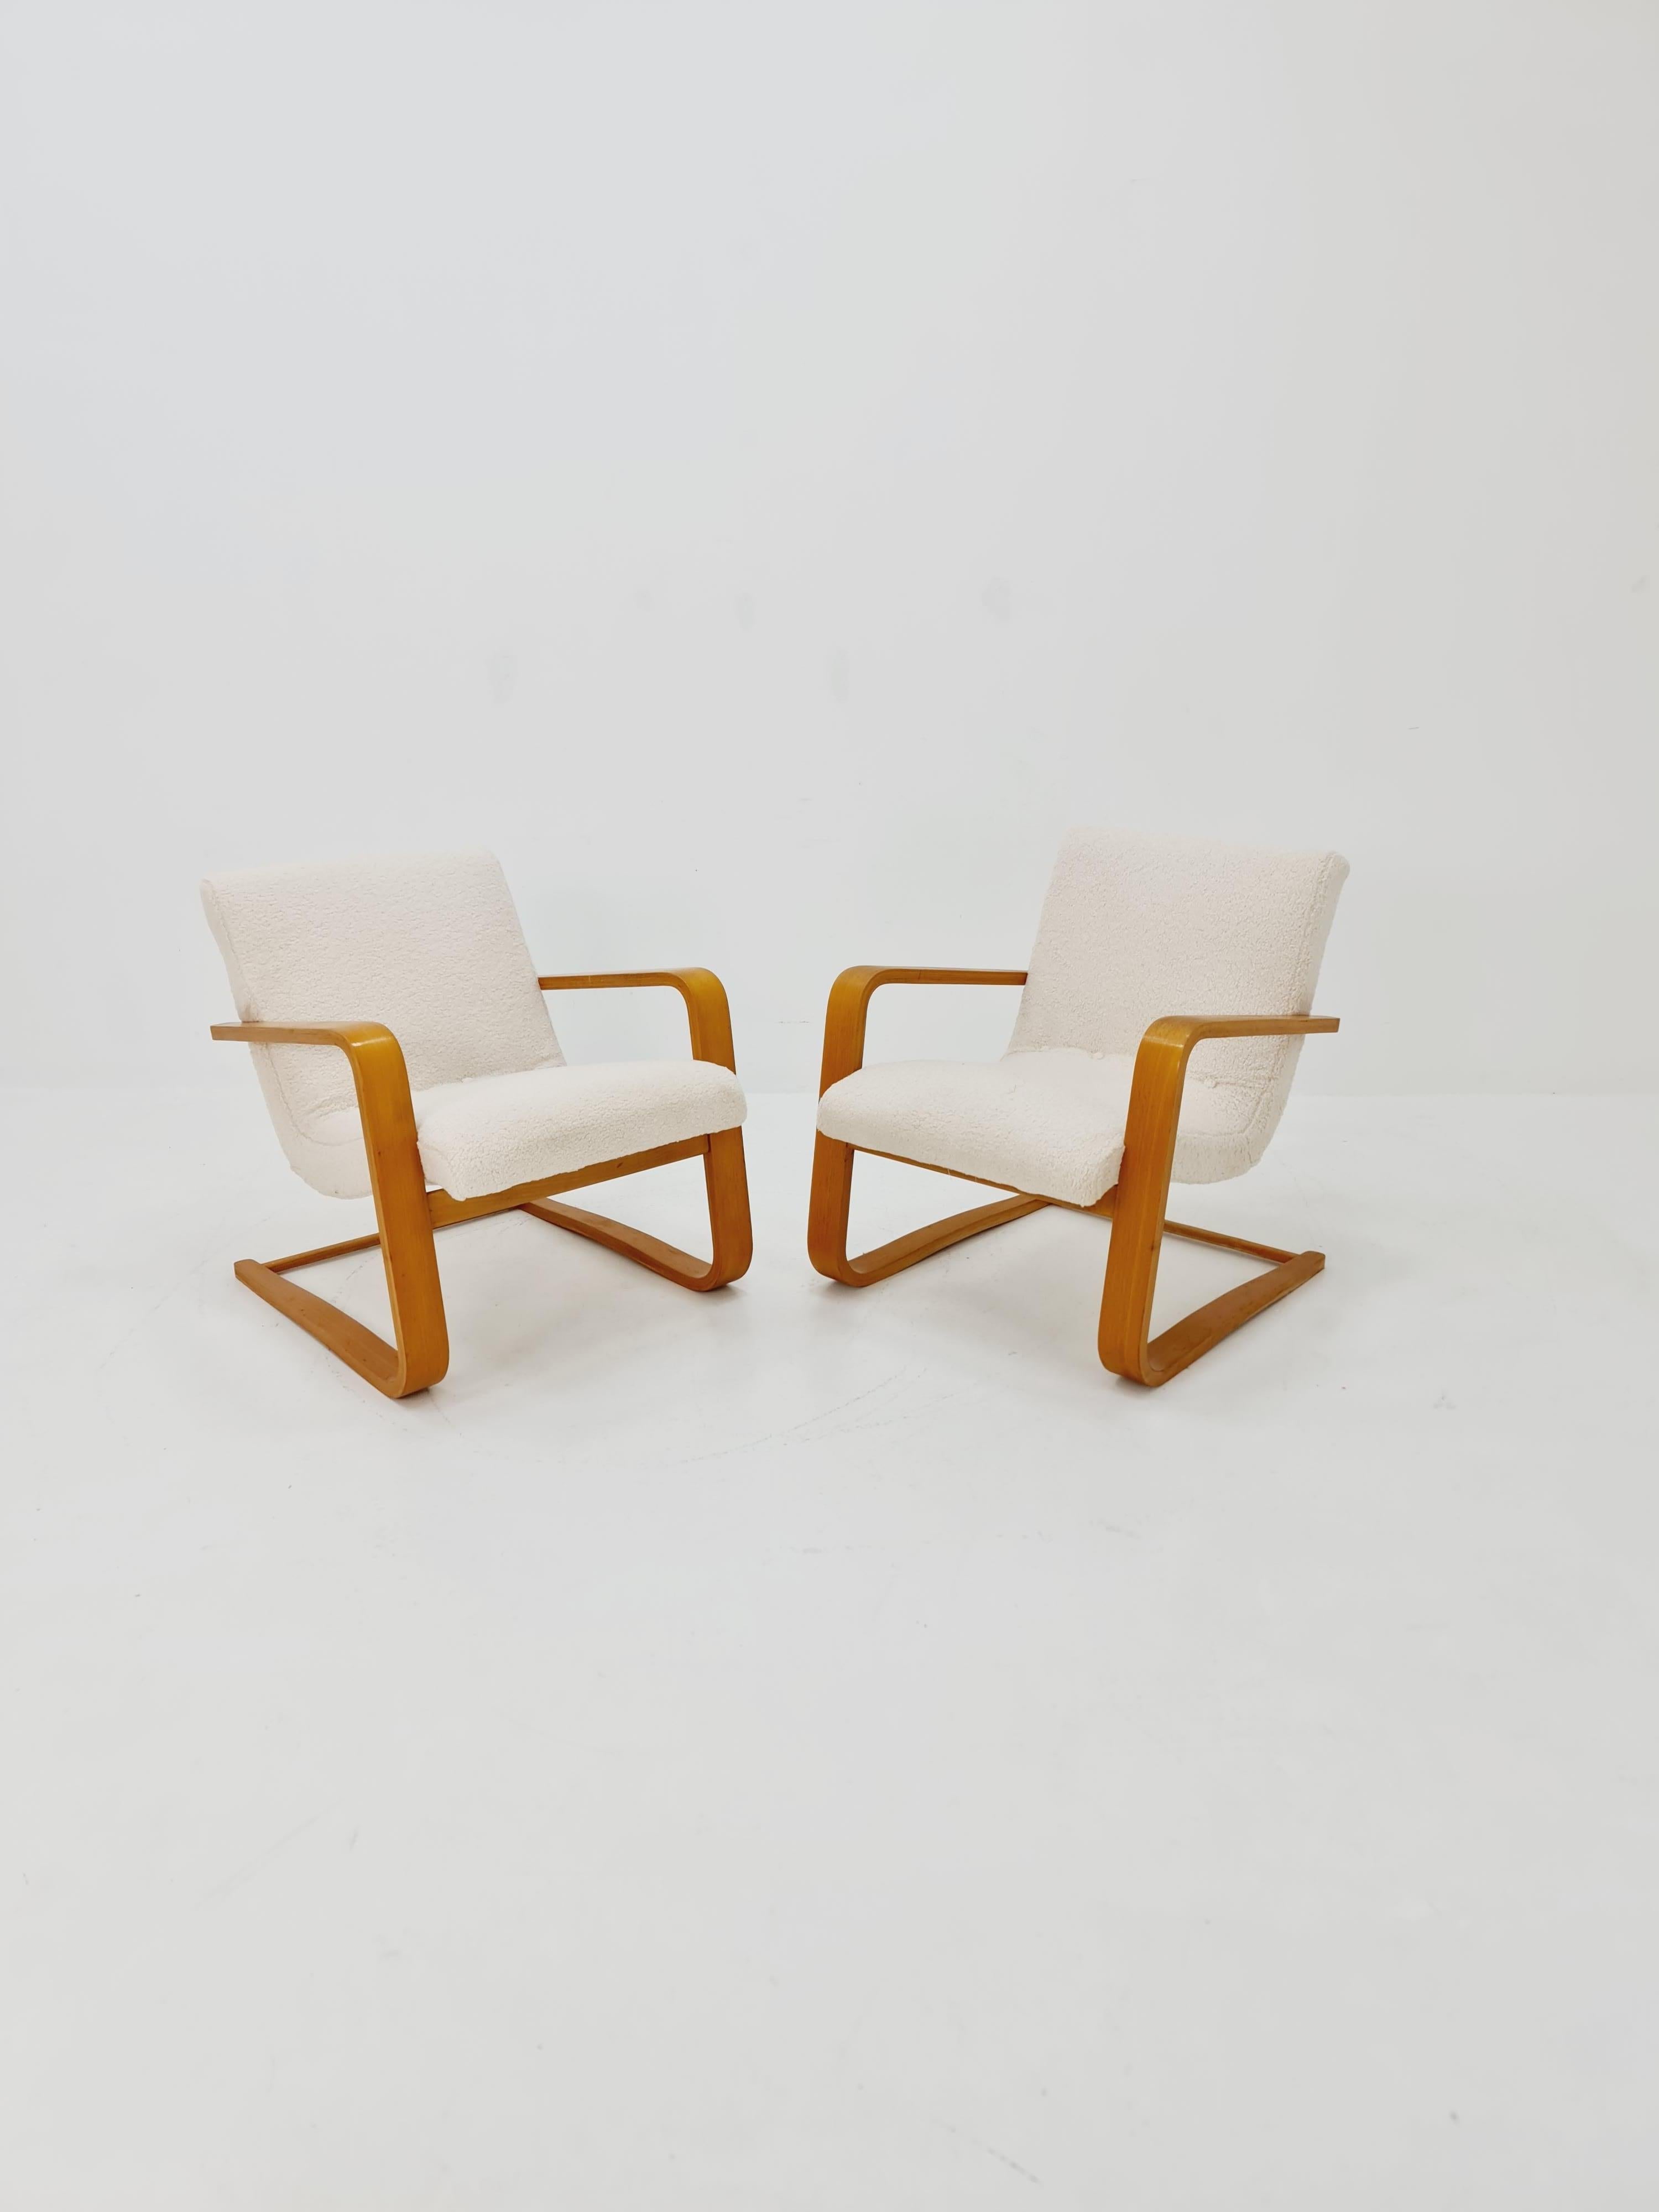 Paire de fauteuils de salon allemands du milieu du siècle dernier, bois cintré  1960s

Le prix est pour une paire

Année de conception : 1960s 


Il est en très bon état. Cependant, comme avec tous les articles vintage, quelques marques d'usure